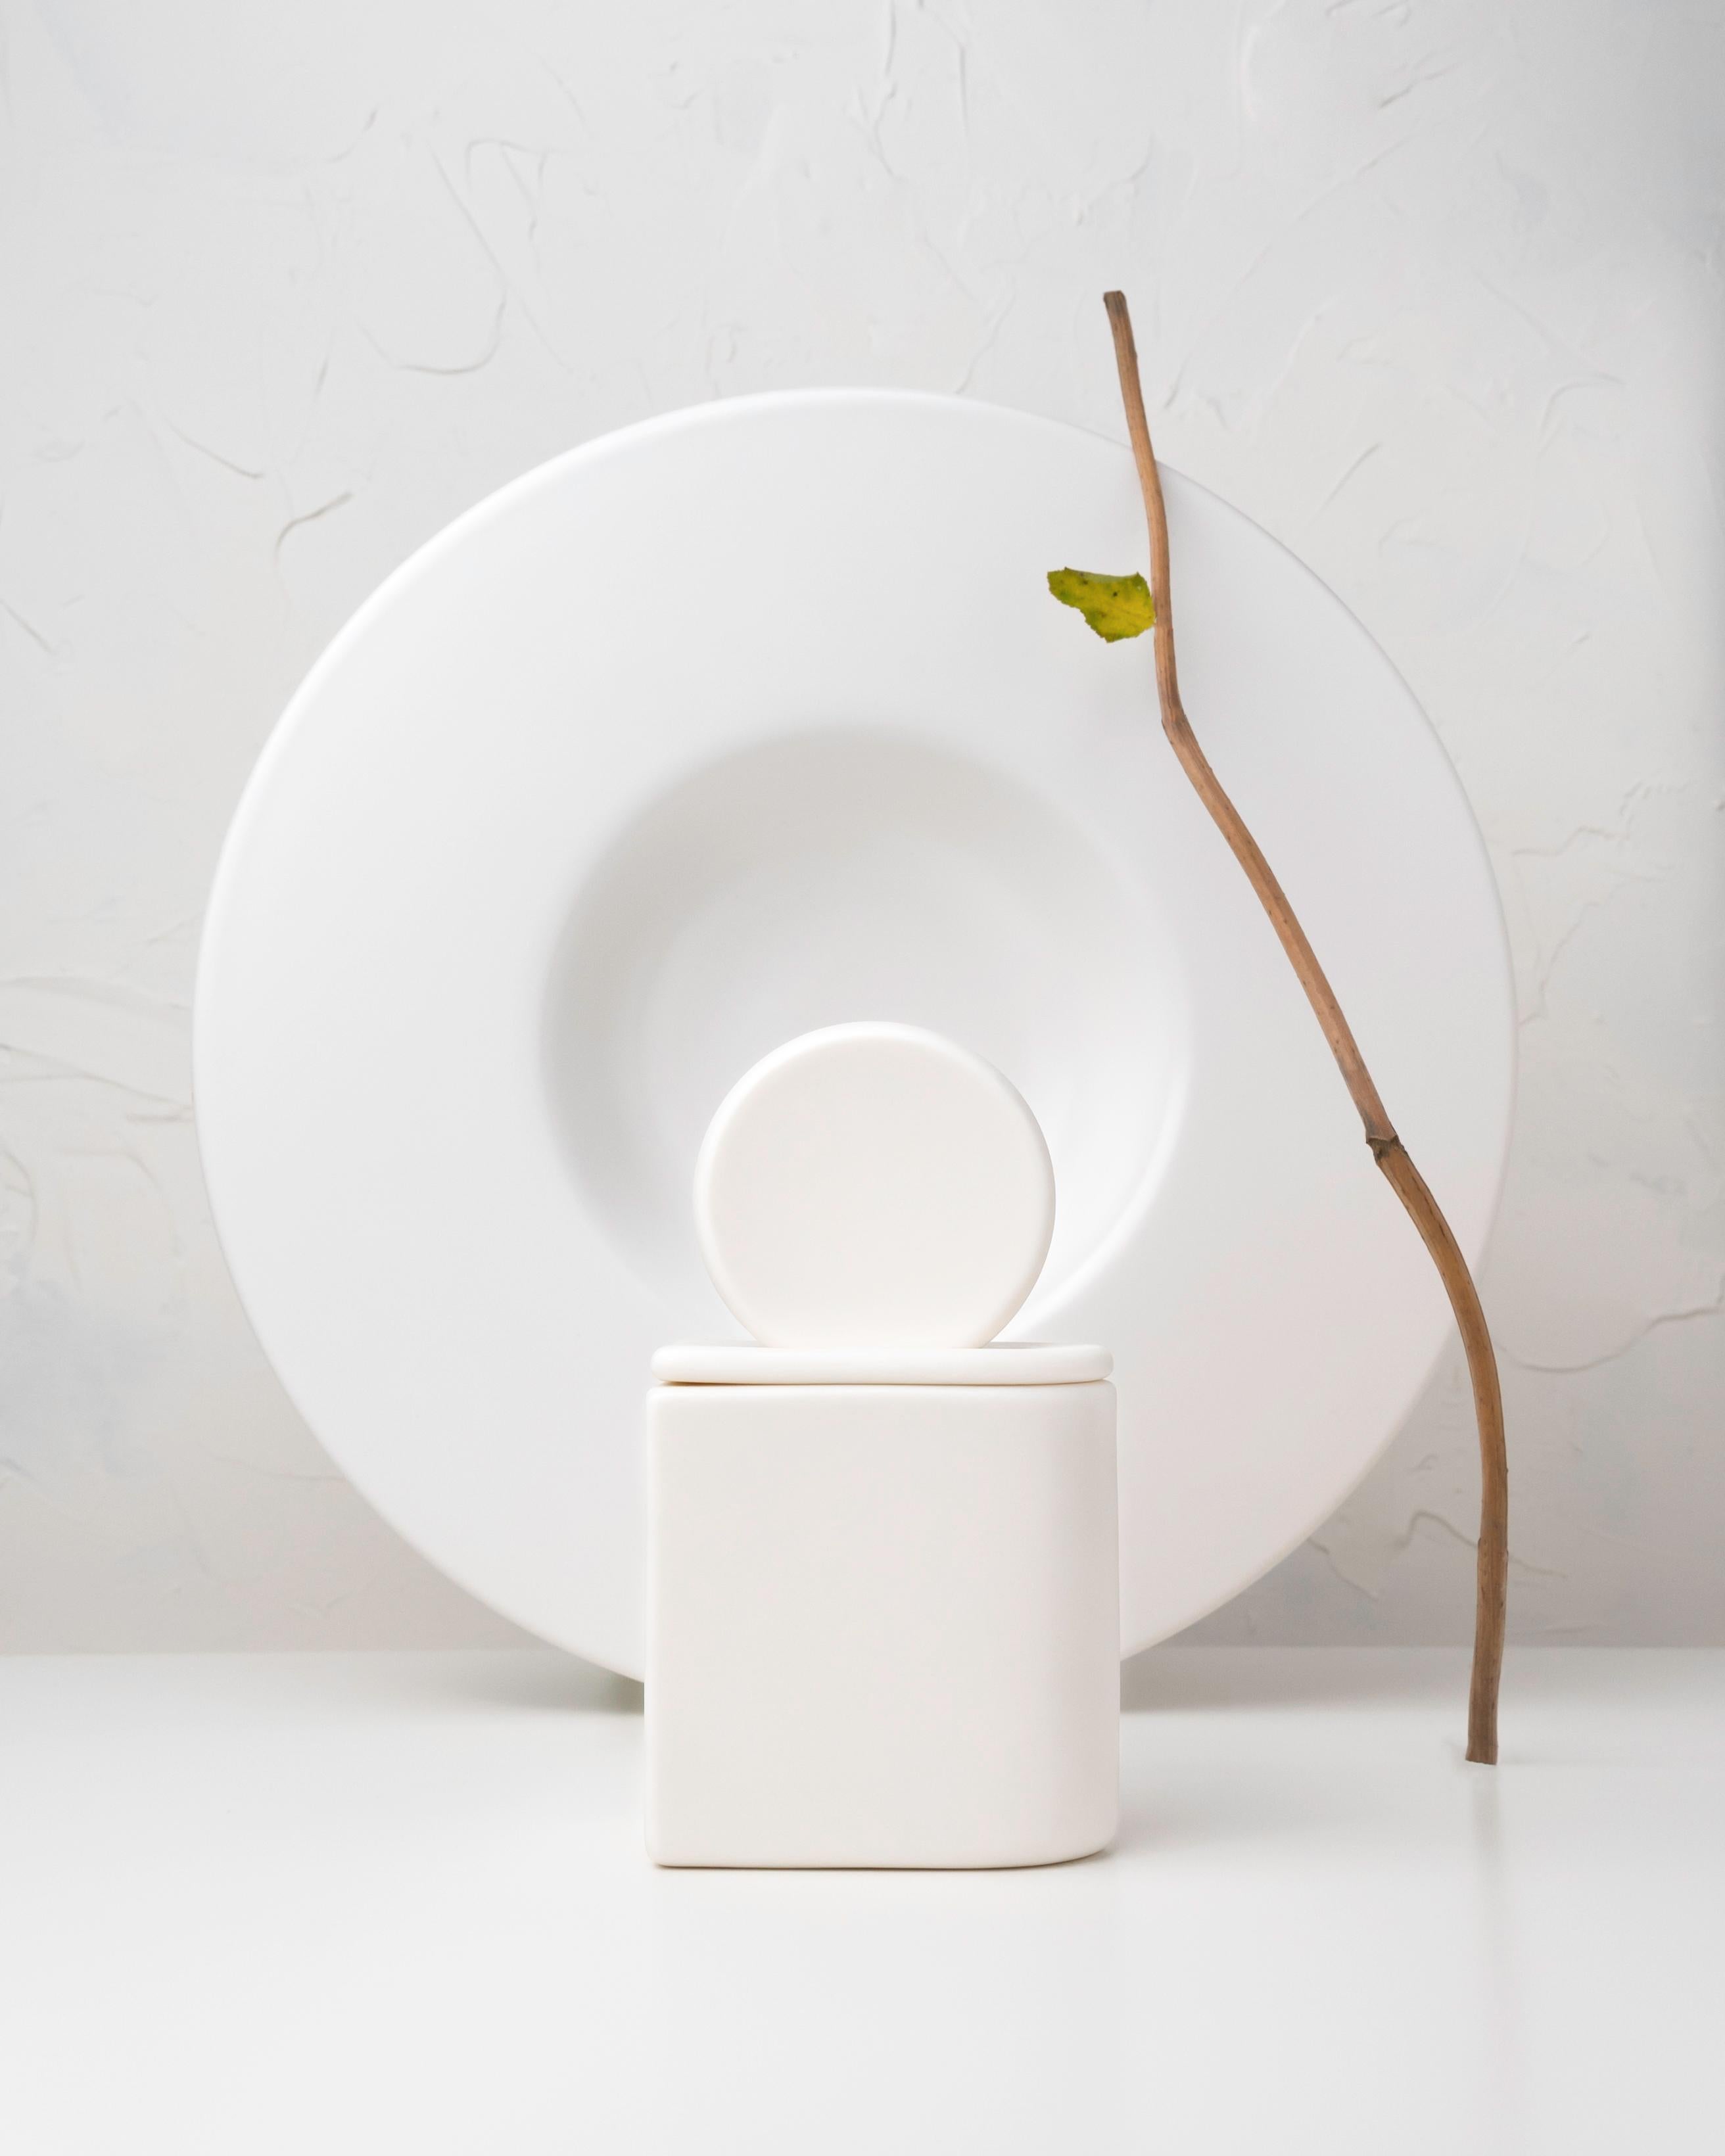 Sonnenuntergang. Ein minimalistischer Keramikbehälter aus Parian-Porzellan. 

Eine von der Natur und klassischen Formen inspirierte Kollektion.

Parian-Porzellangefäße, unglasiert.

- • 160 g natürliches Sojawachs

- • ca. 30 h Brenndauer

- •